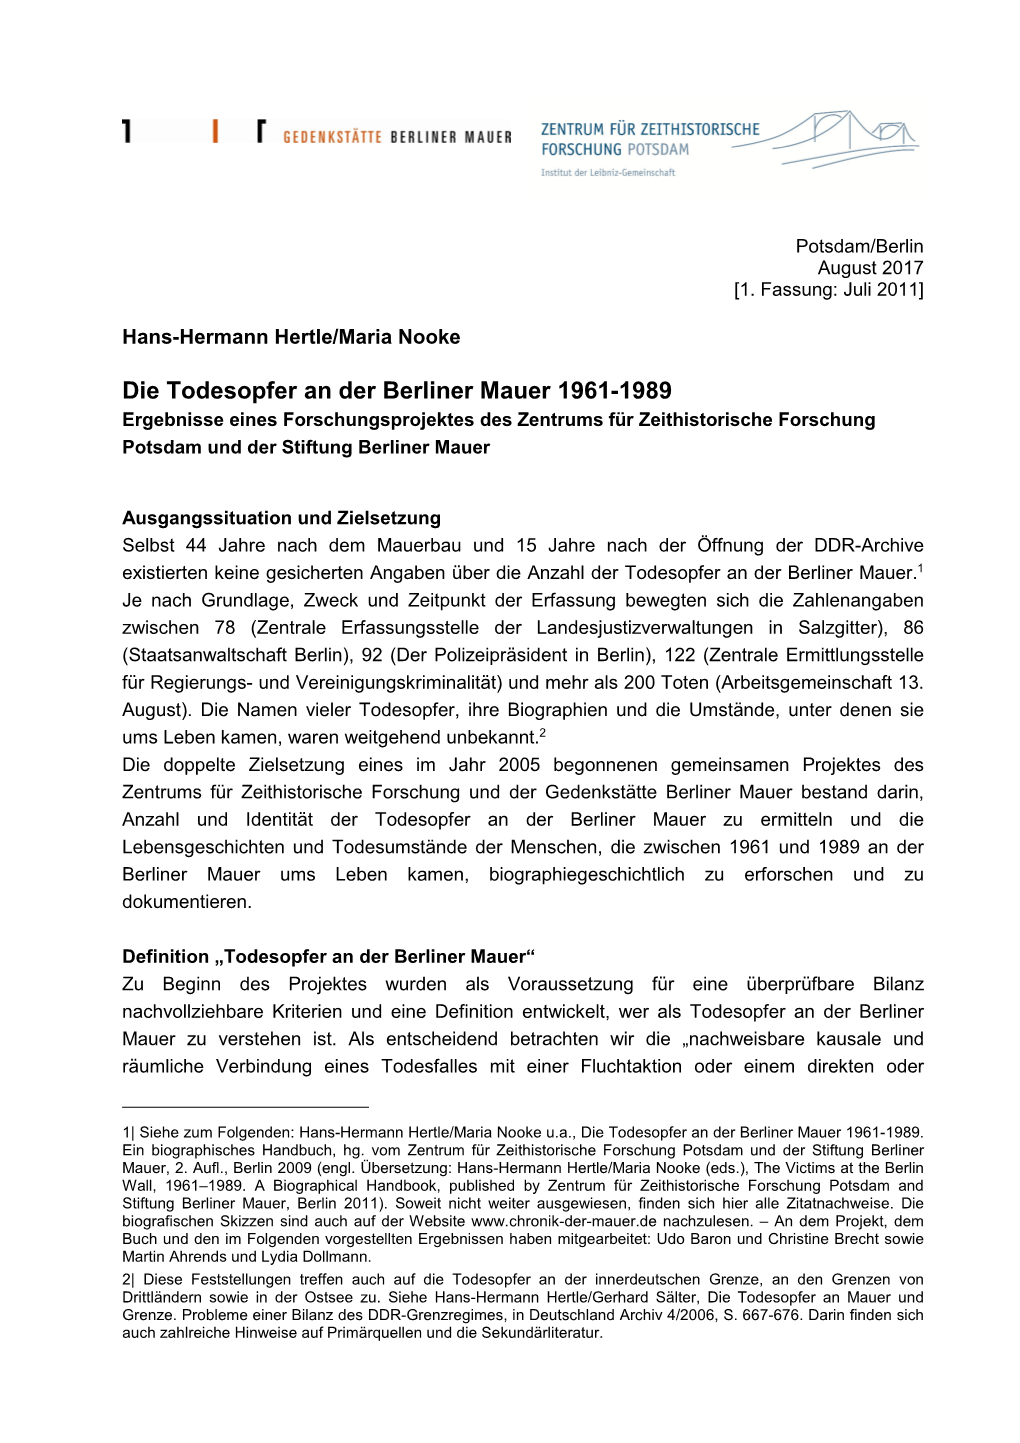 H. Hertle/M. Nooke, Die Todesopfer an Der Berliner Mauer 1961-1989